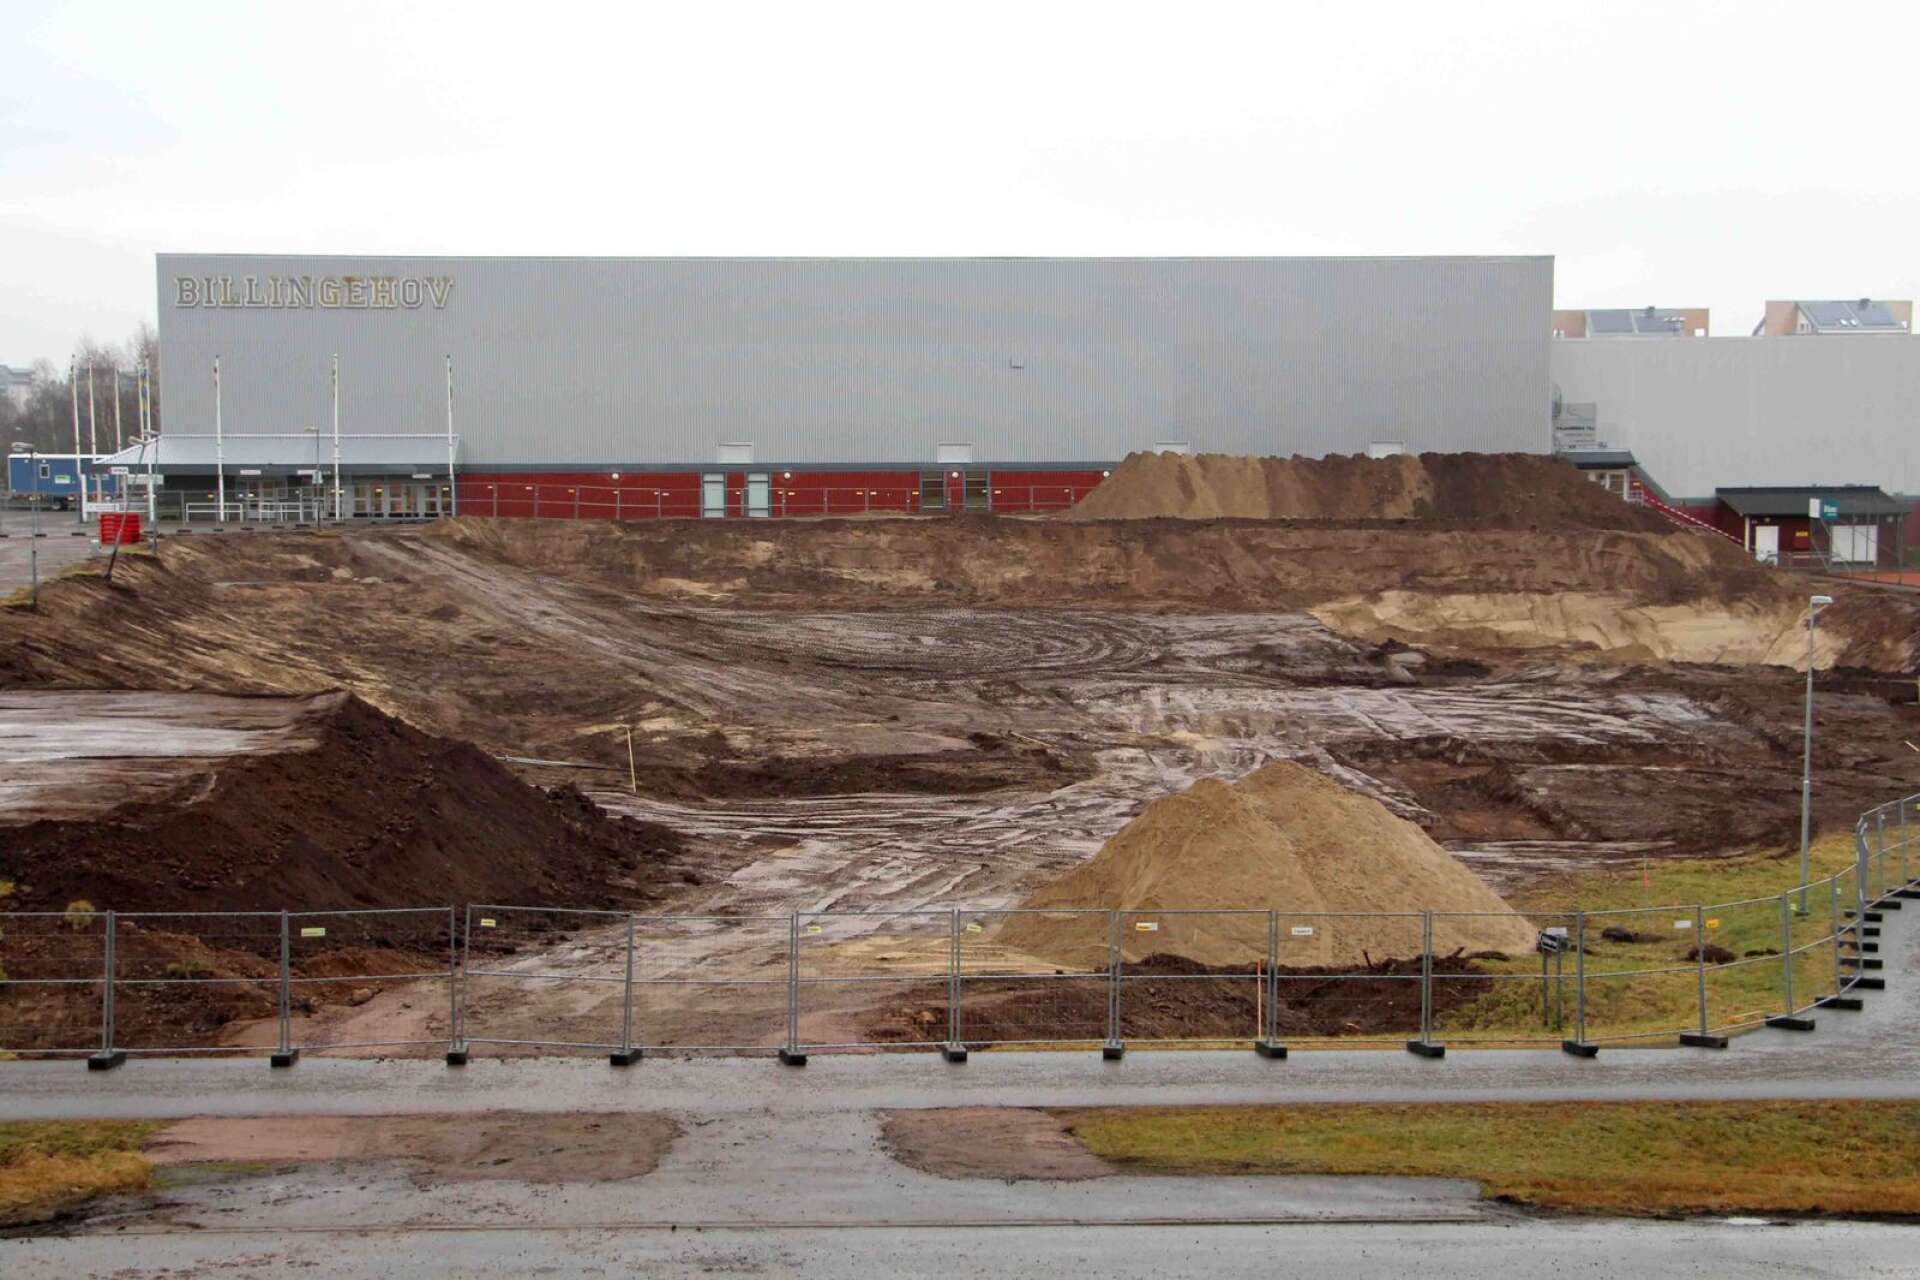 Ungefär så här såg det ut vid Skövdehem Arena när Skanska förvarade ett fordon och en bränsletank på området utan tillstånd.